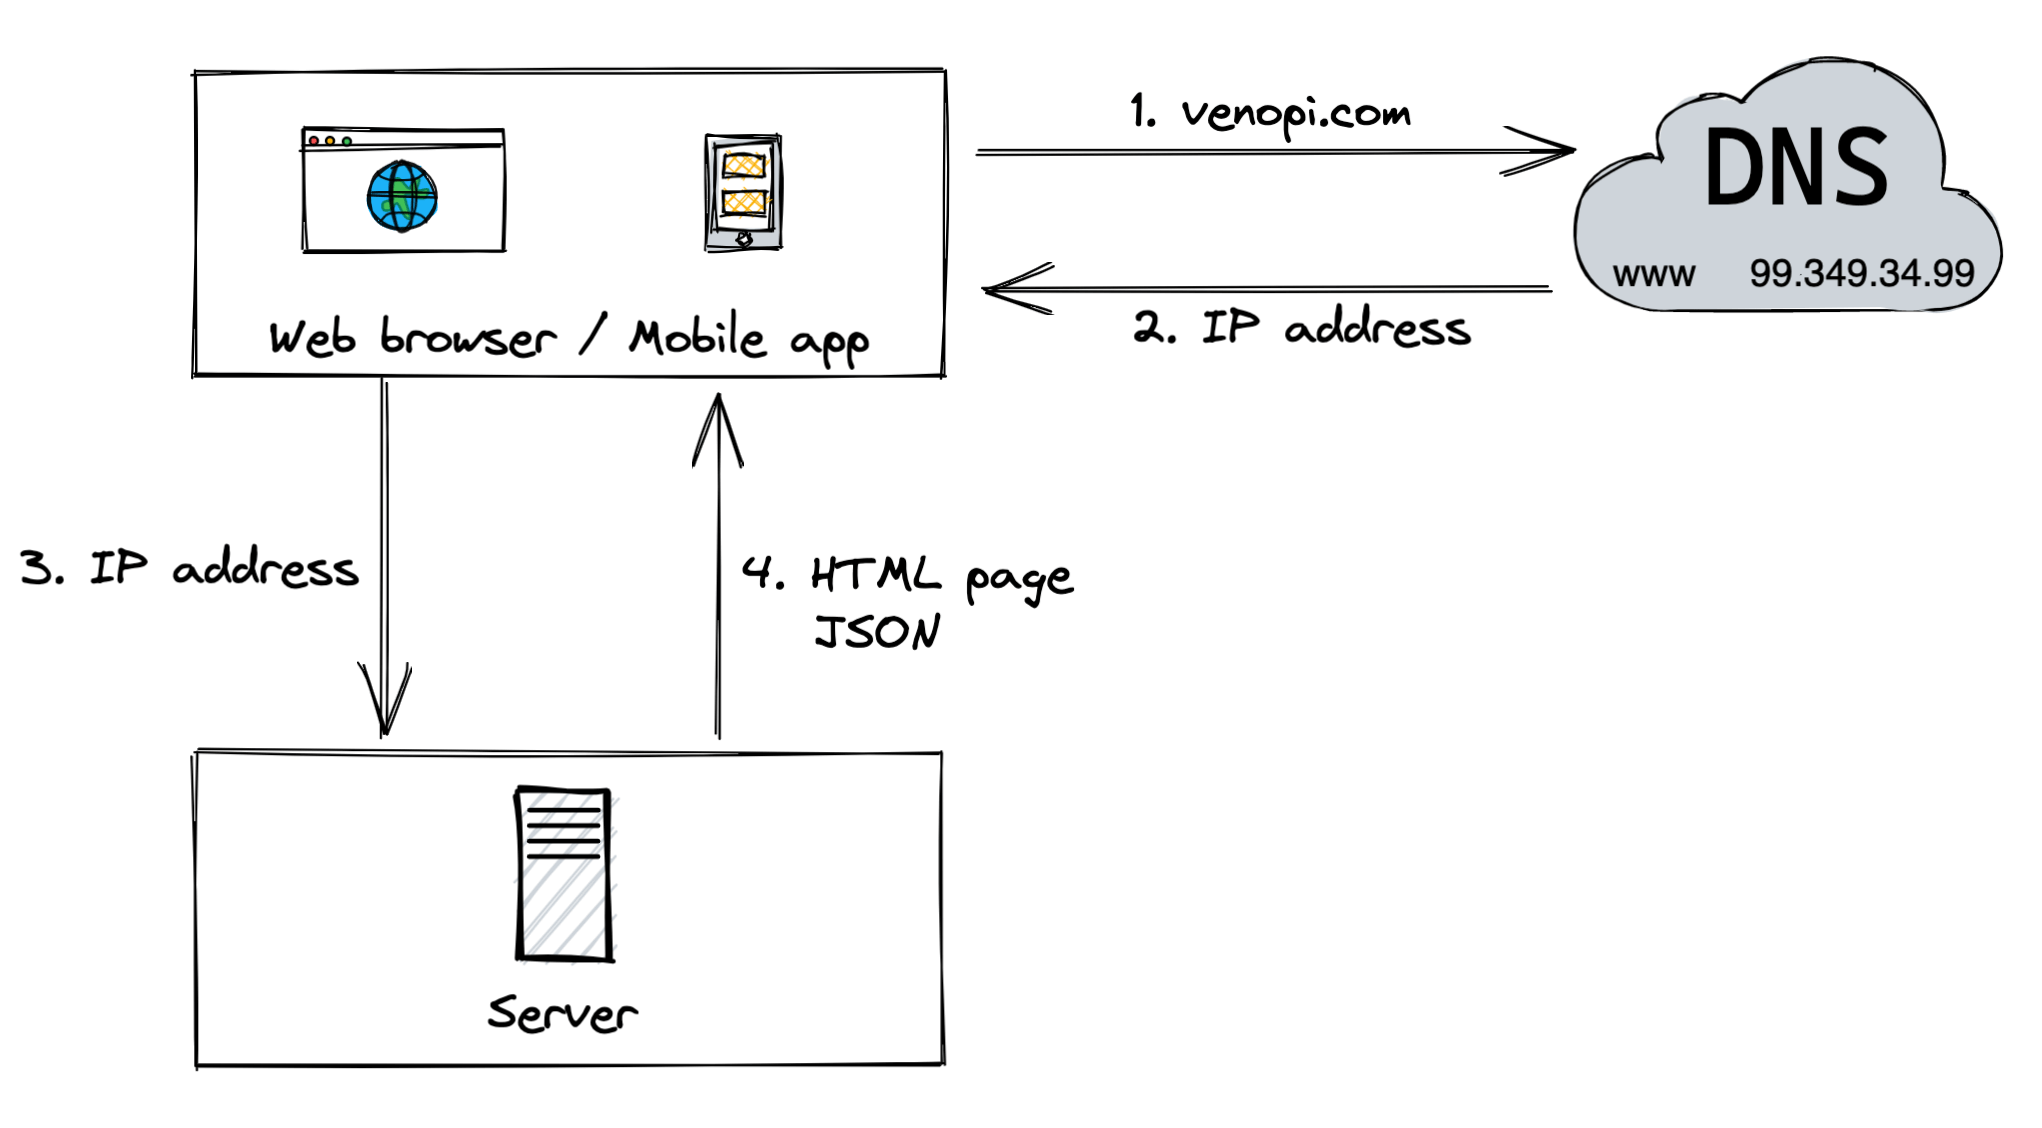 Single server setup